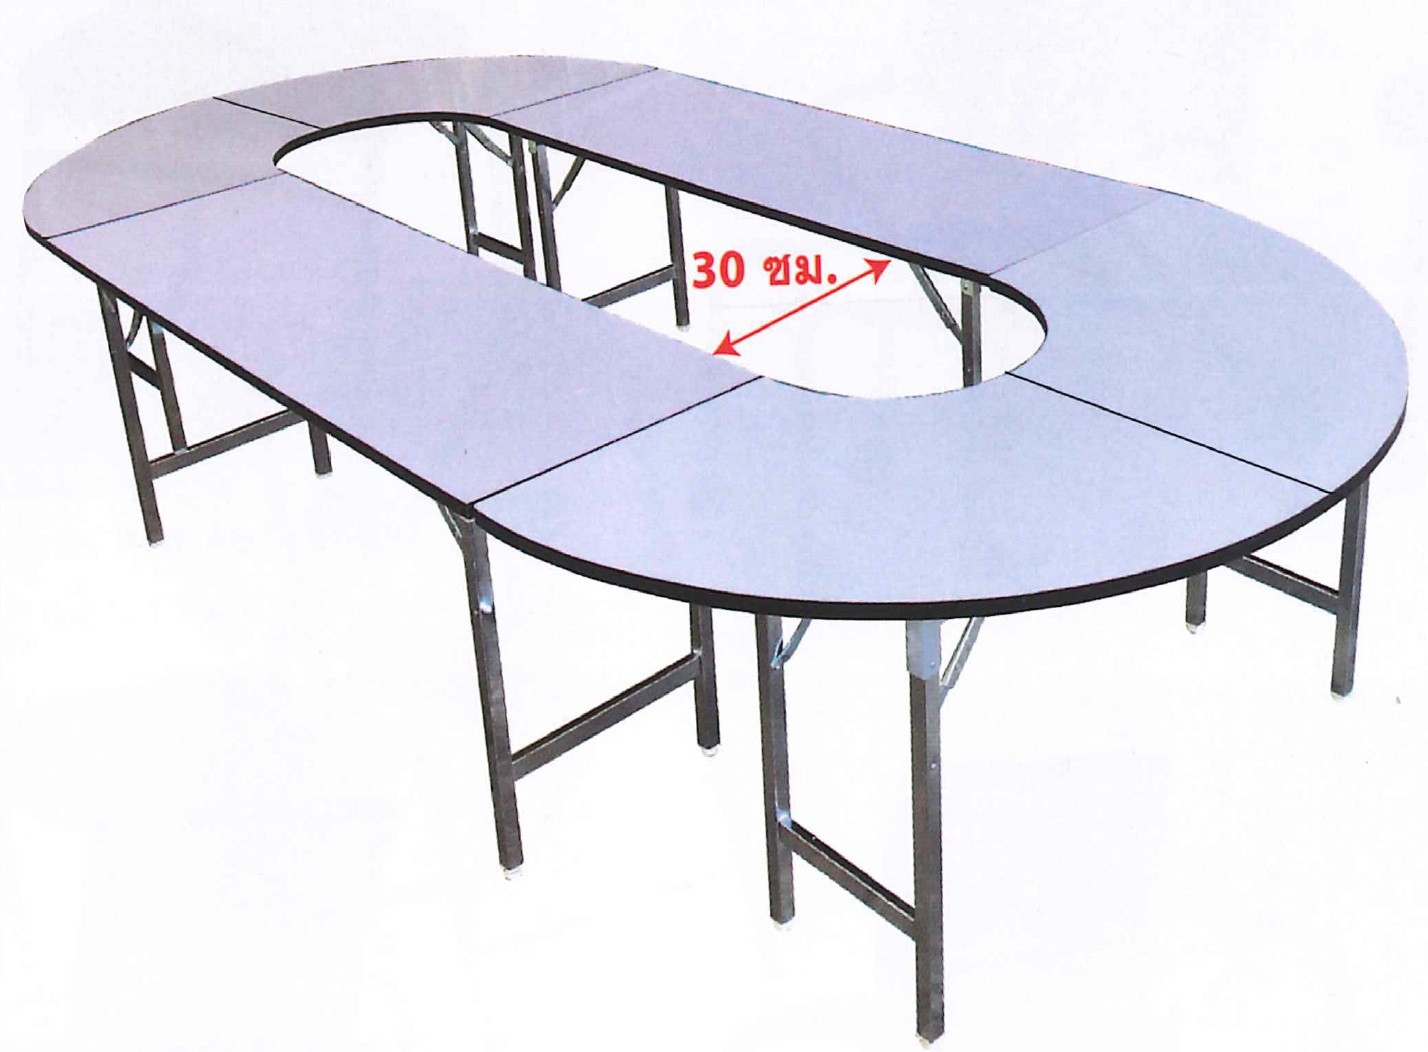 DG/TMEET75180,โต๊ะประชุมรูปวงรี,โต๊ะประชุม,โต๊ะวงรี,โต๊ะวงรีรูปไข่,โต๊ะรูปไข่,โต๊ะประชุม,โต๊ะสัมมนา,โต๊ะประชุมสัมมนา,โต๊ะอเนกประสงค์,โต๊ะ,table